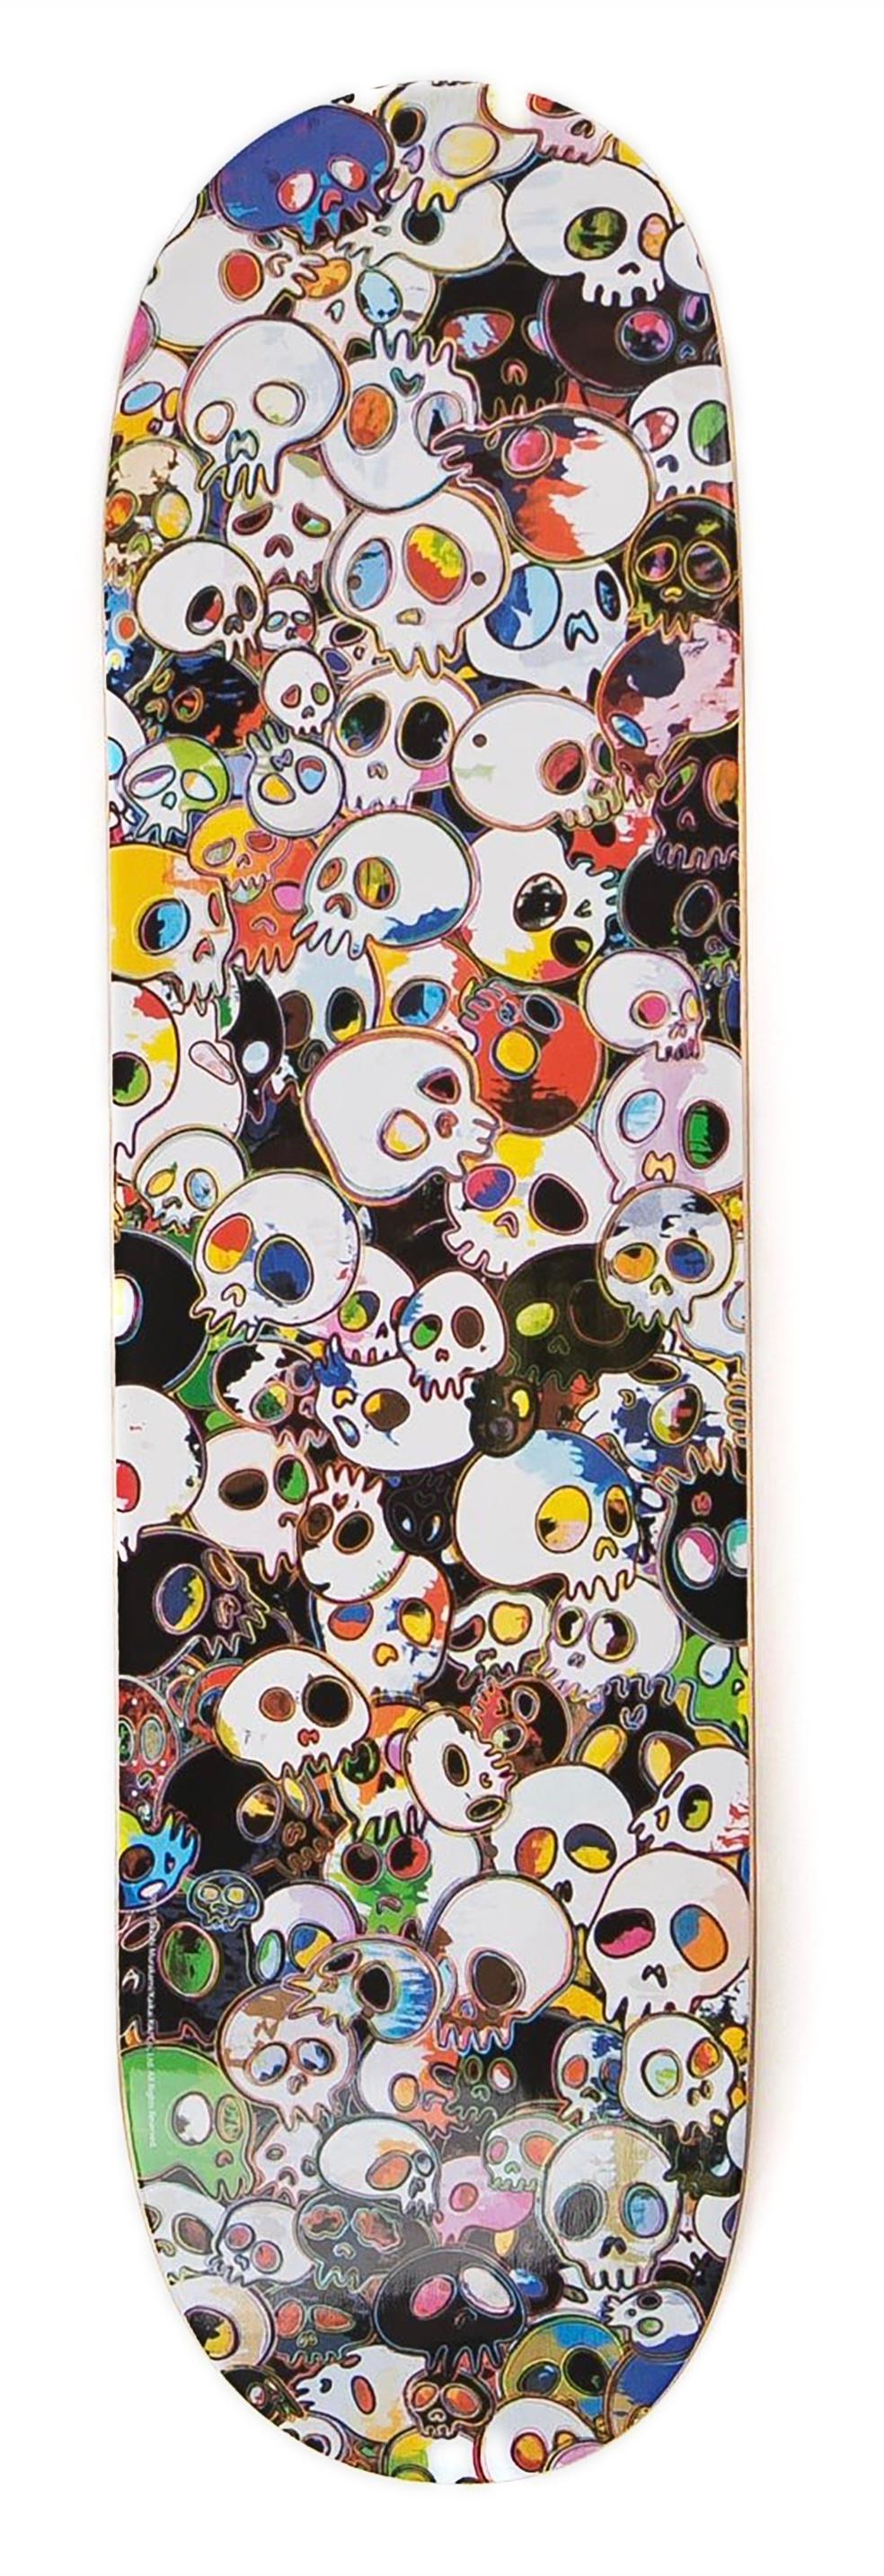 Takashi Murakami Skulls Skateboard Deck  2015 :
Une pièce unique et vibrante de Takashi Murakami  skulls wall-art - ce skateboard Murakami en édition limitée très collector a été publié en 2015 dans le cadre d'une collaboration entre Takashi